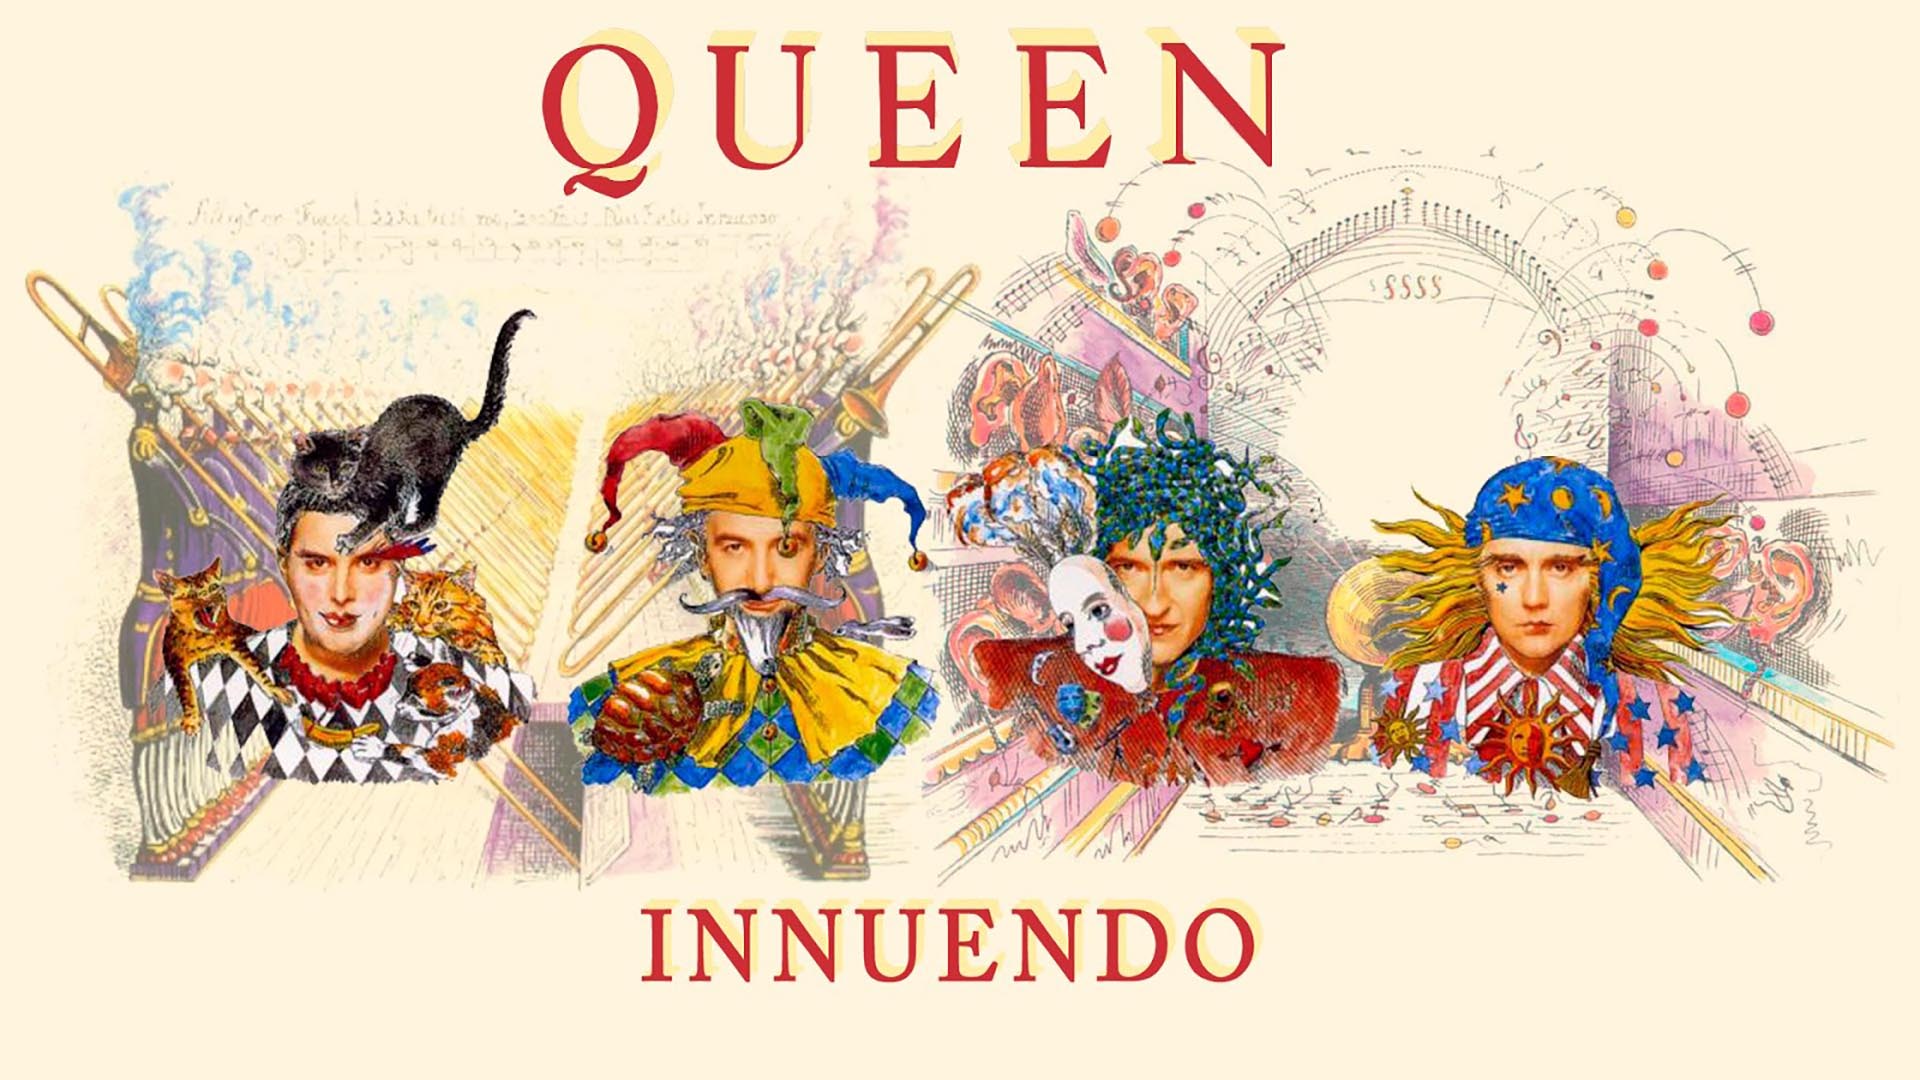 "Innuendo", la última genialidad de Queen. El nombre era una de las palabras con las que el cantante solía sorprender a sus rivales en el Scrabble